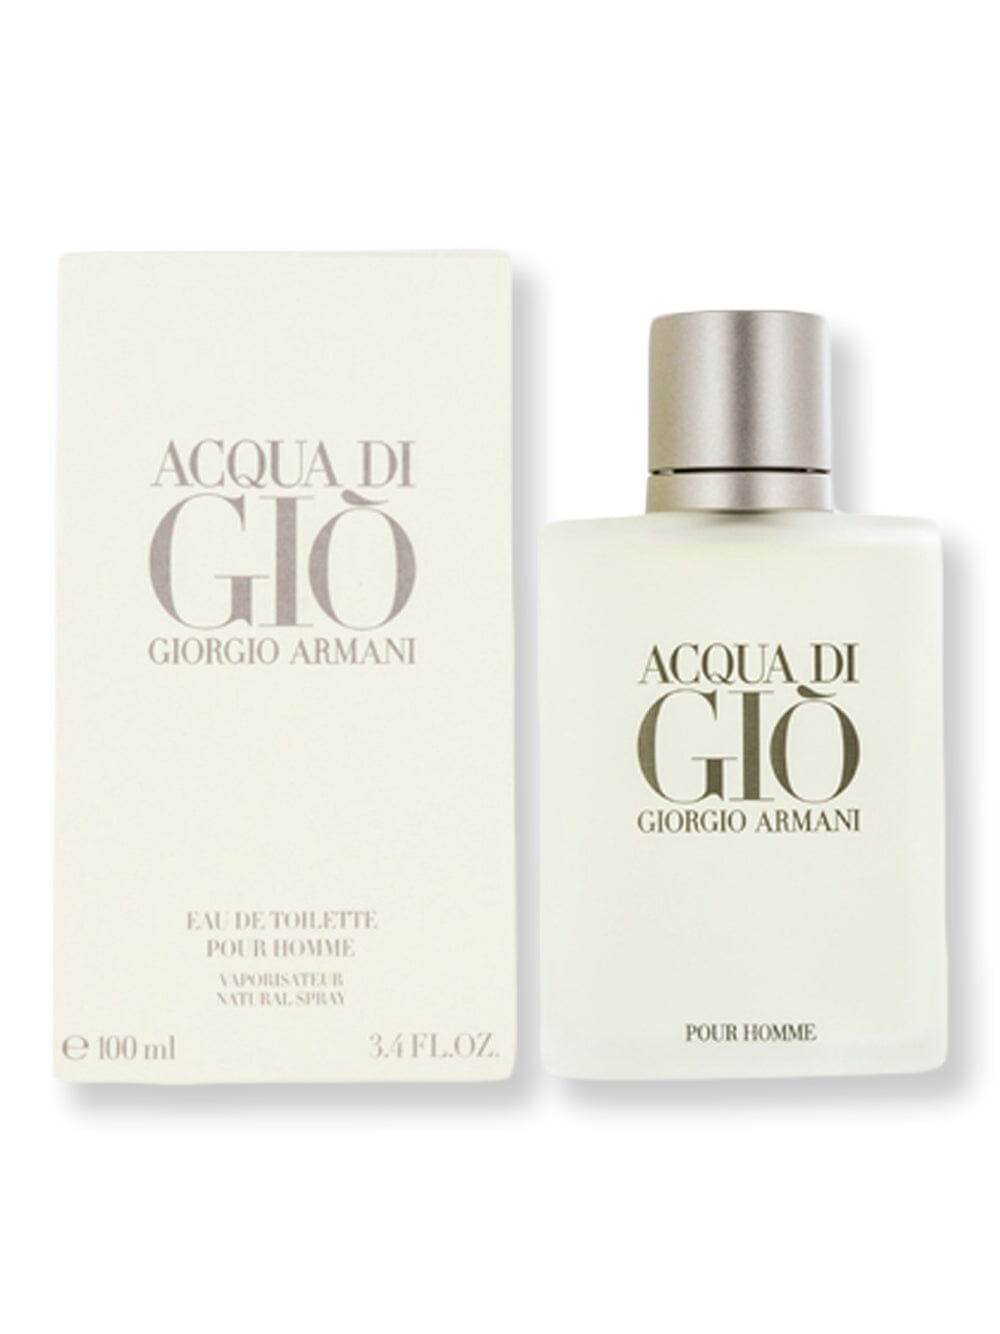 GIORGIO ARMANI GIORGIO ARMANI Acqua Di Gio Men EDT Spray 3.4 oz100 ml Perfume 